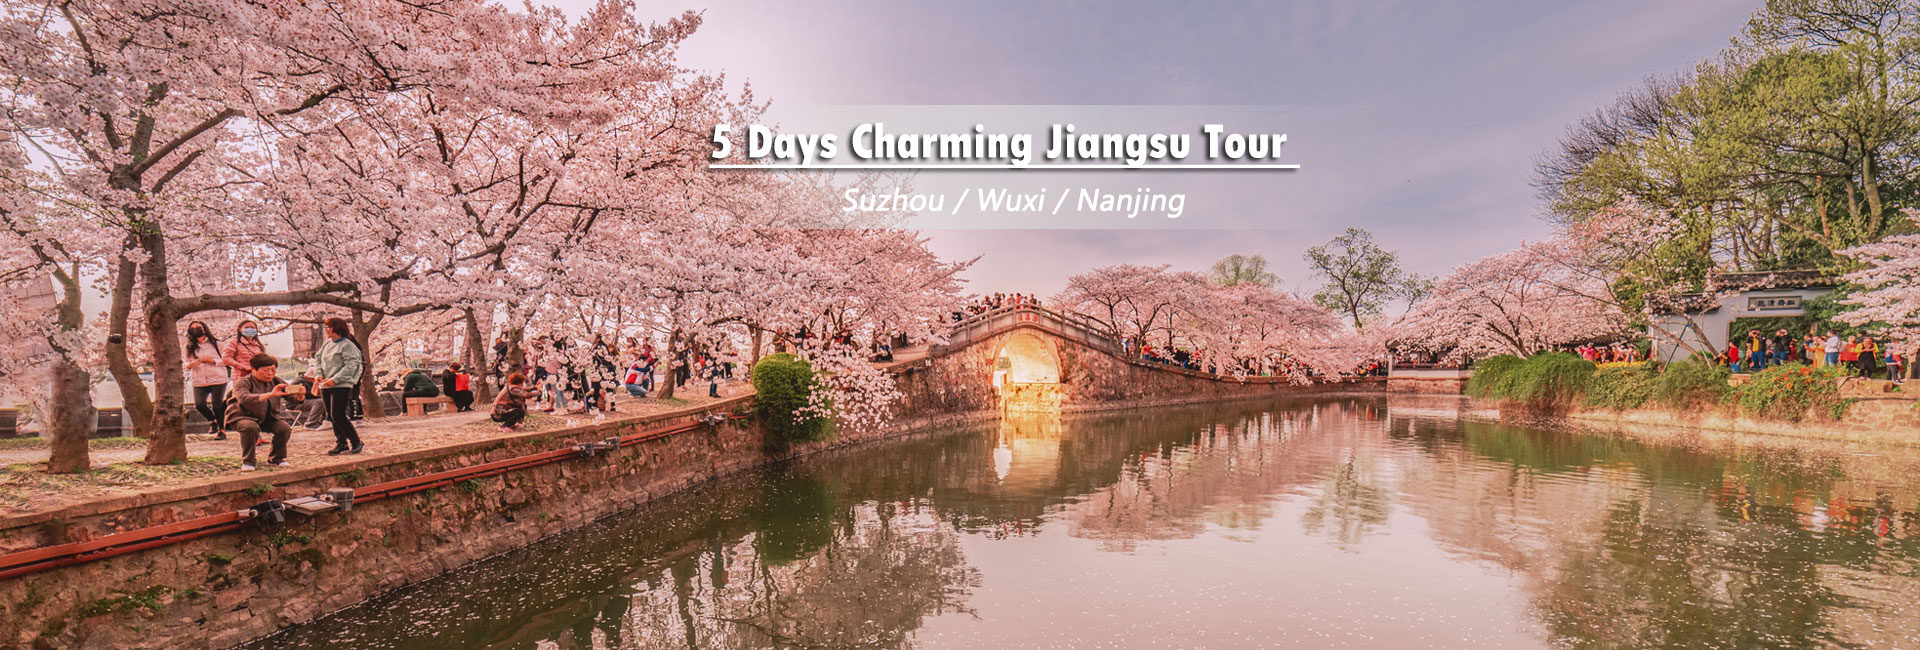 Jiangsu Tours 